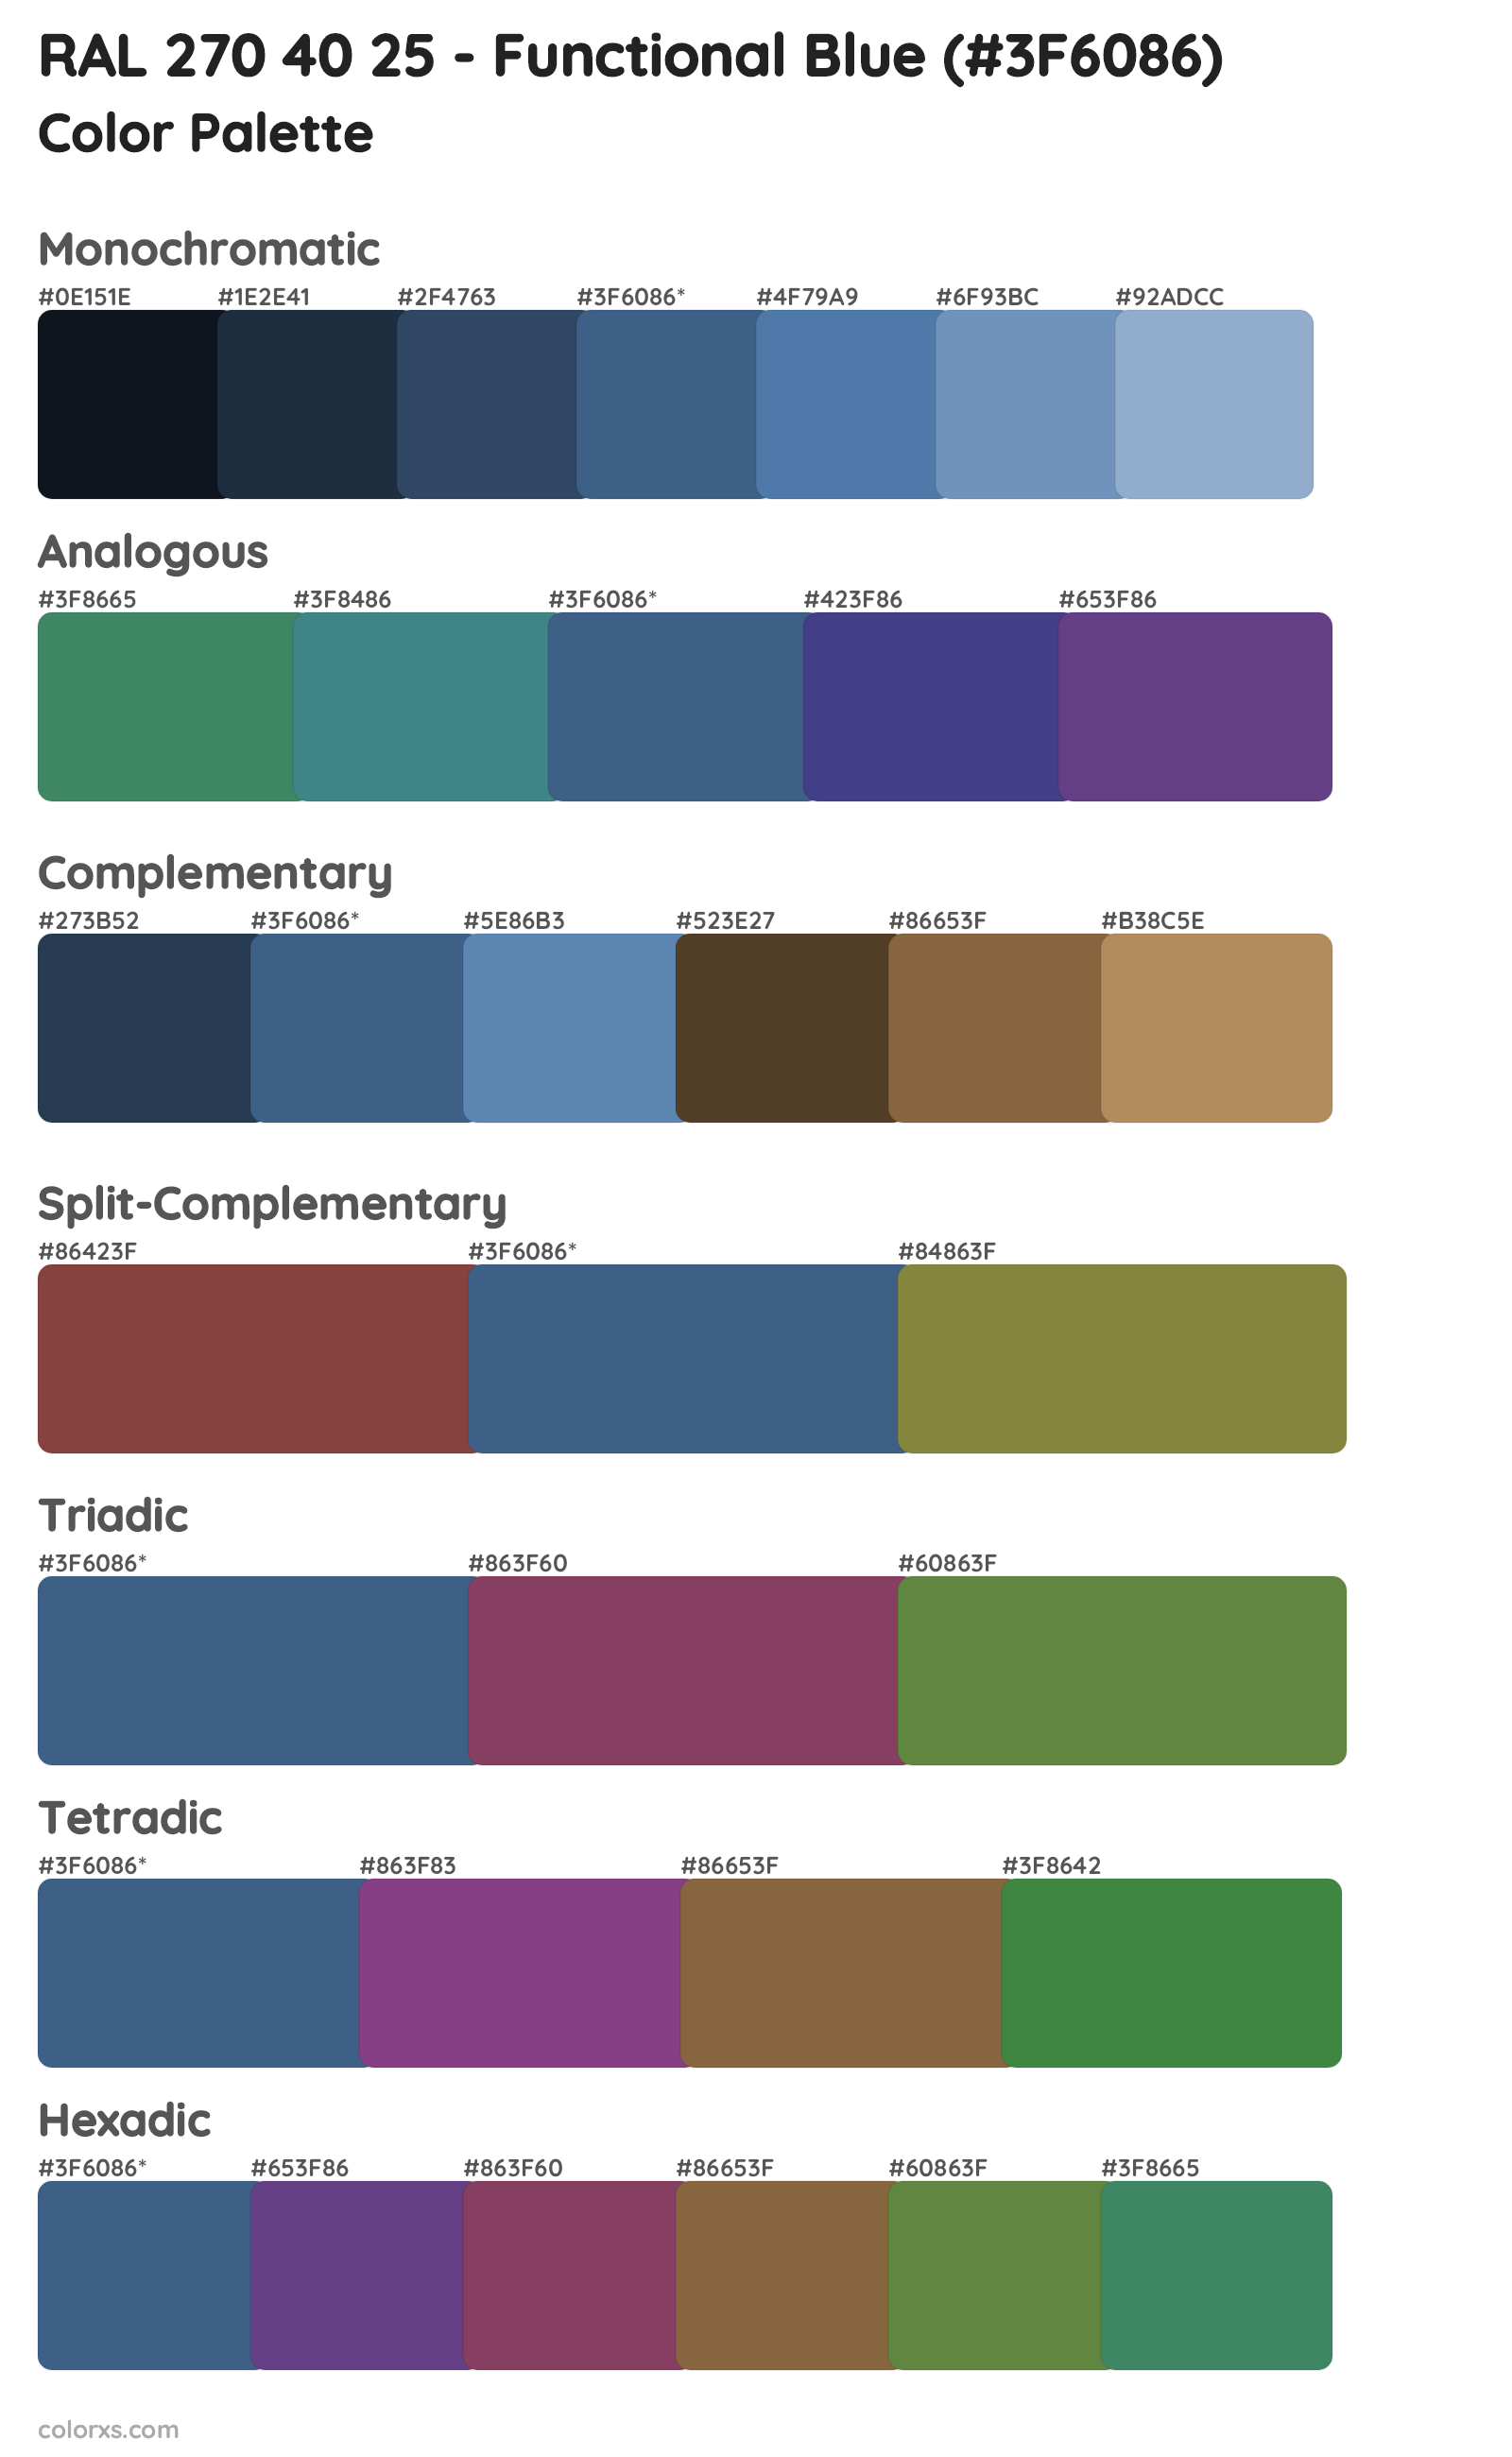 RAL 270 40 25 - Functional Blue Color Scheme Palettes